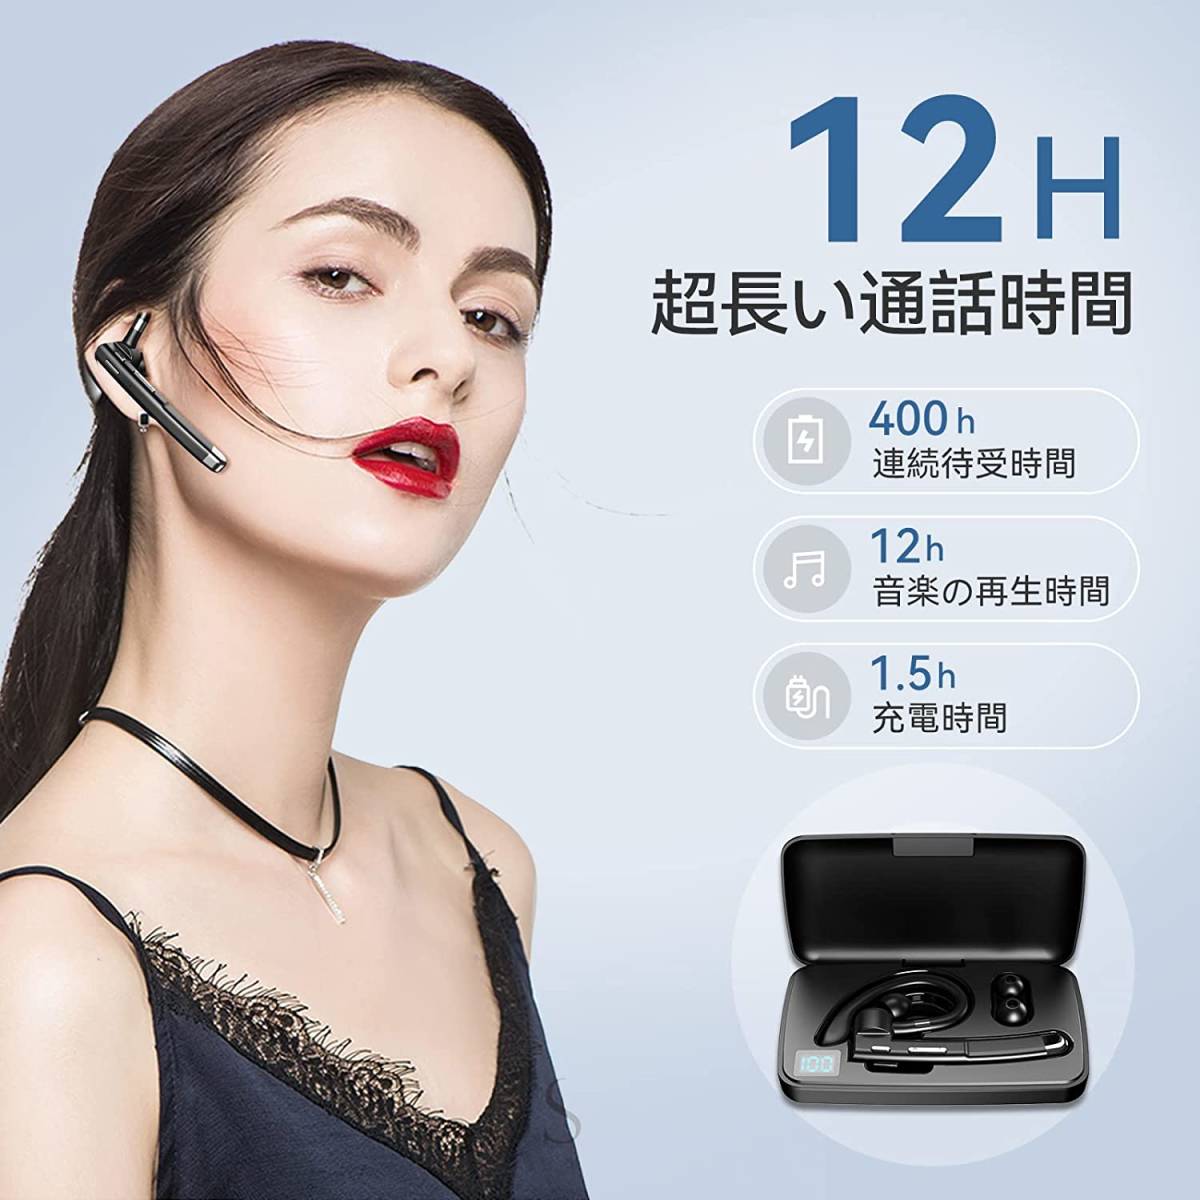 Bluetoothヘッドセット 片耳 ワイヤレス 耳掛け型 LEDディスプレイ